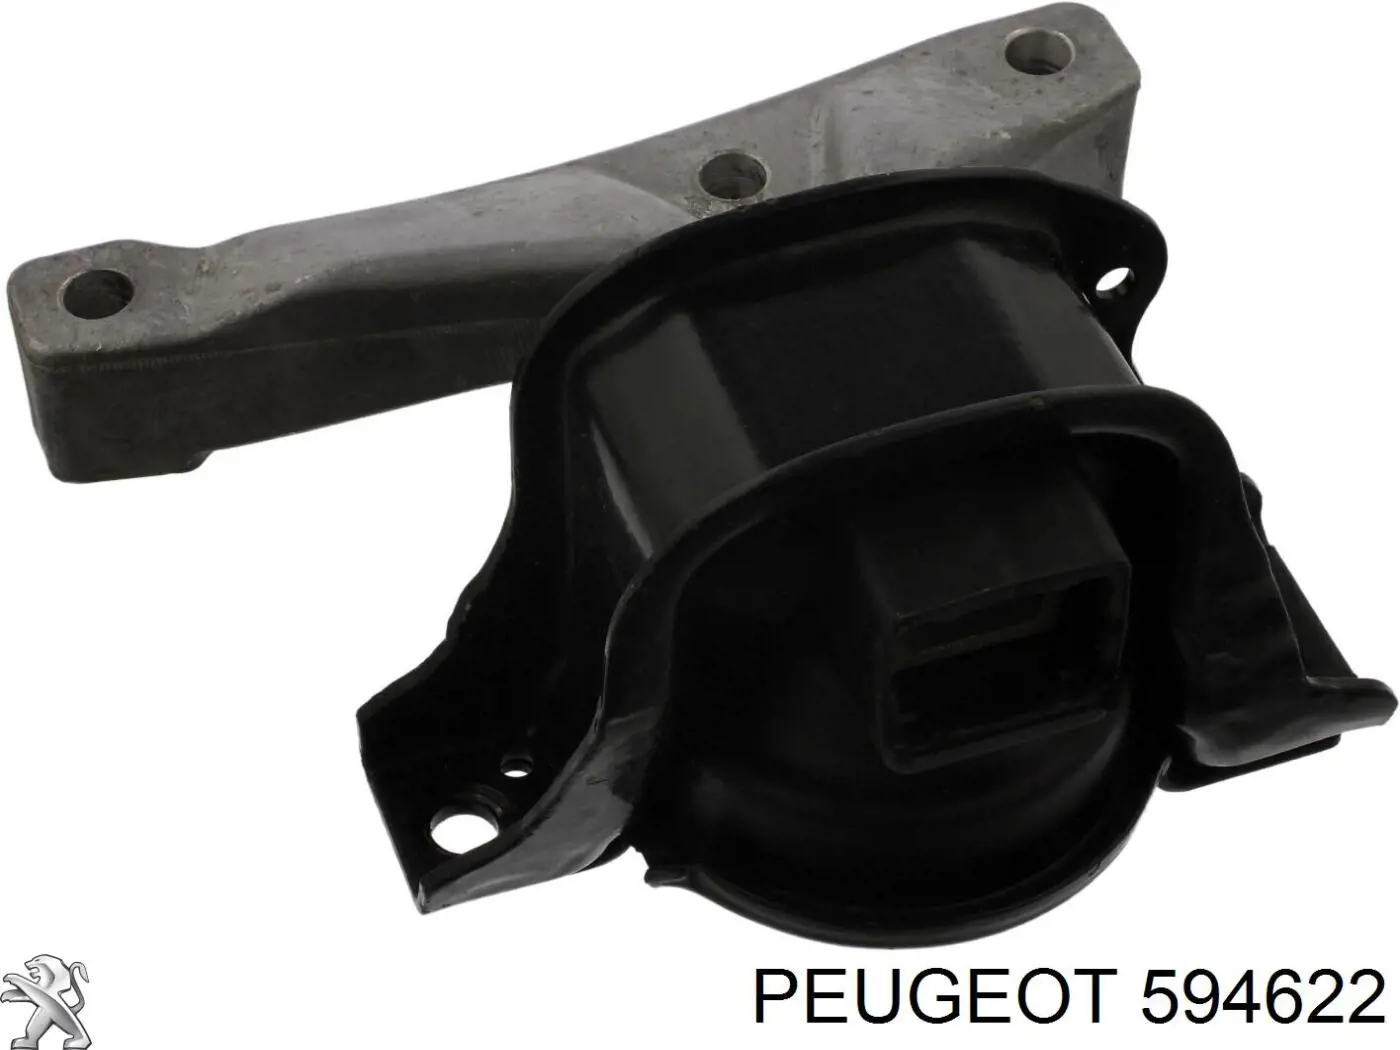 594622 Peugeot/Citroen sensor de detonacion